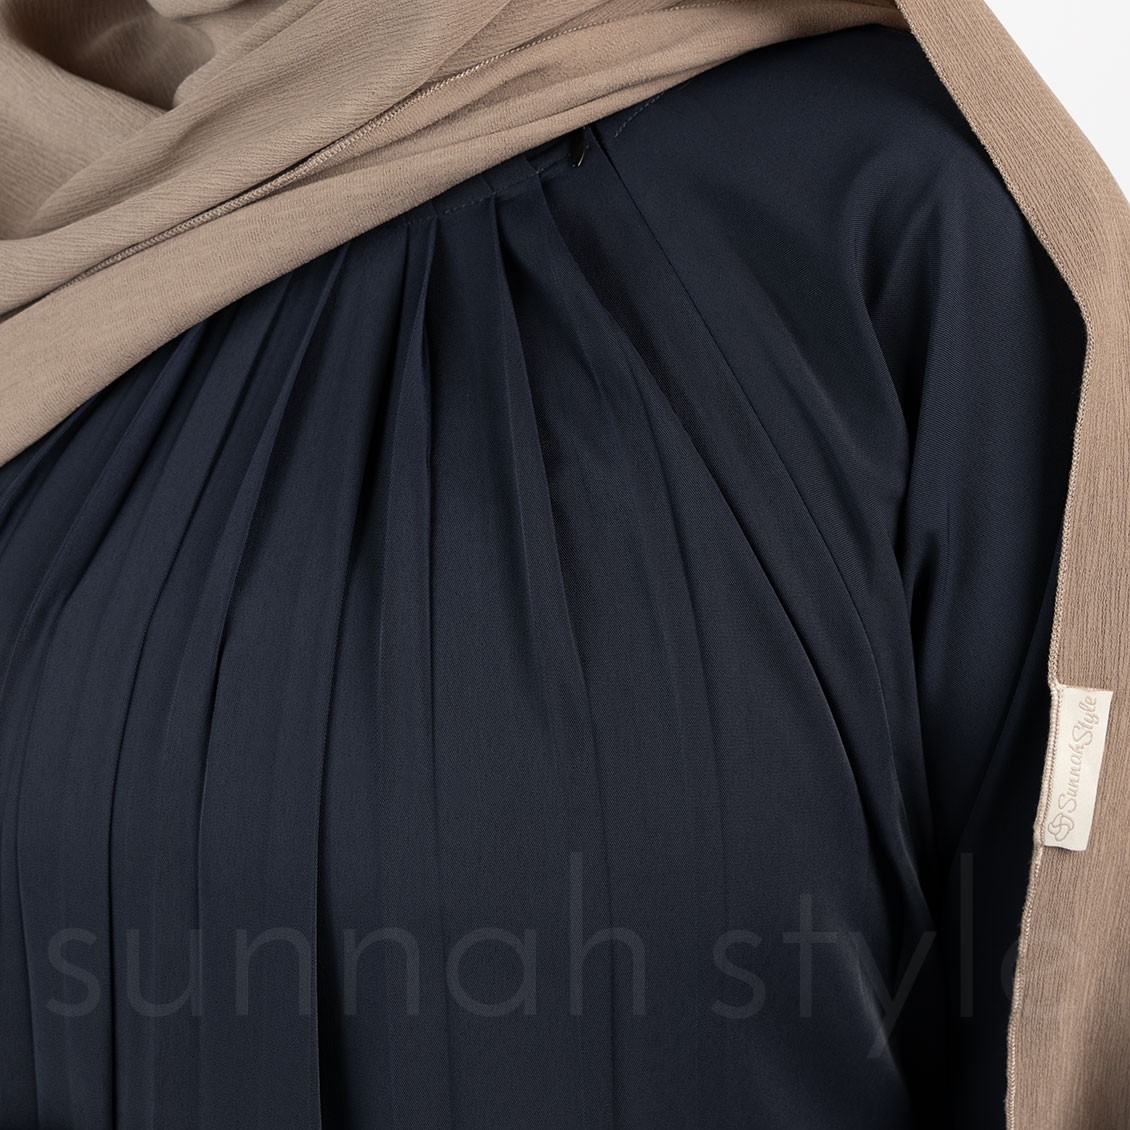 Simplicity Umbrella Abaya (Navy Blue)